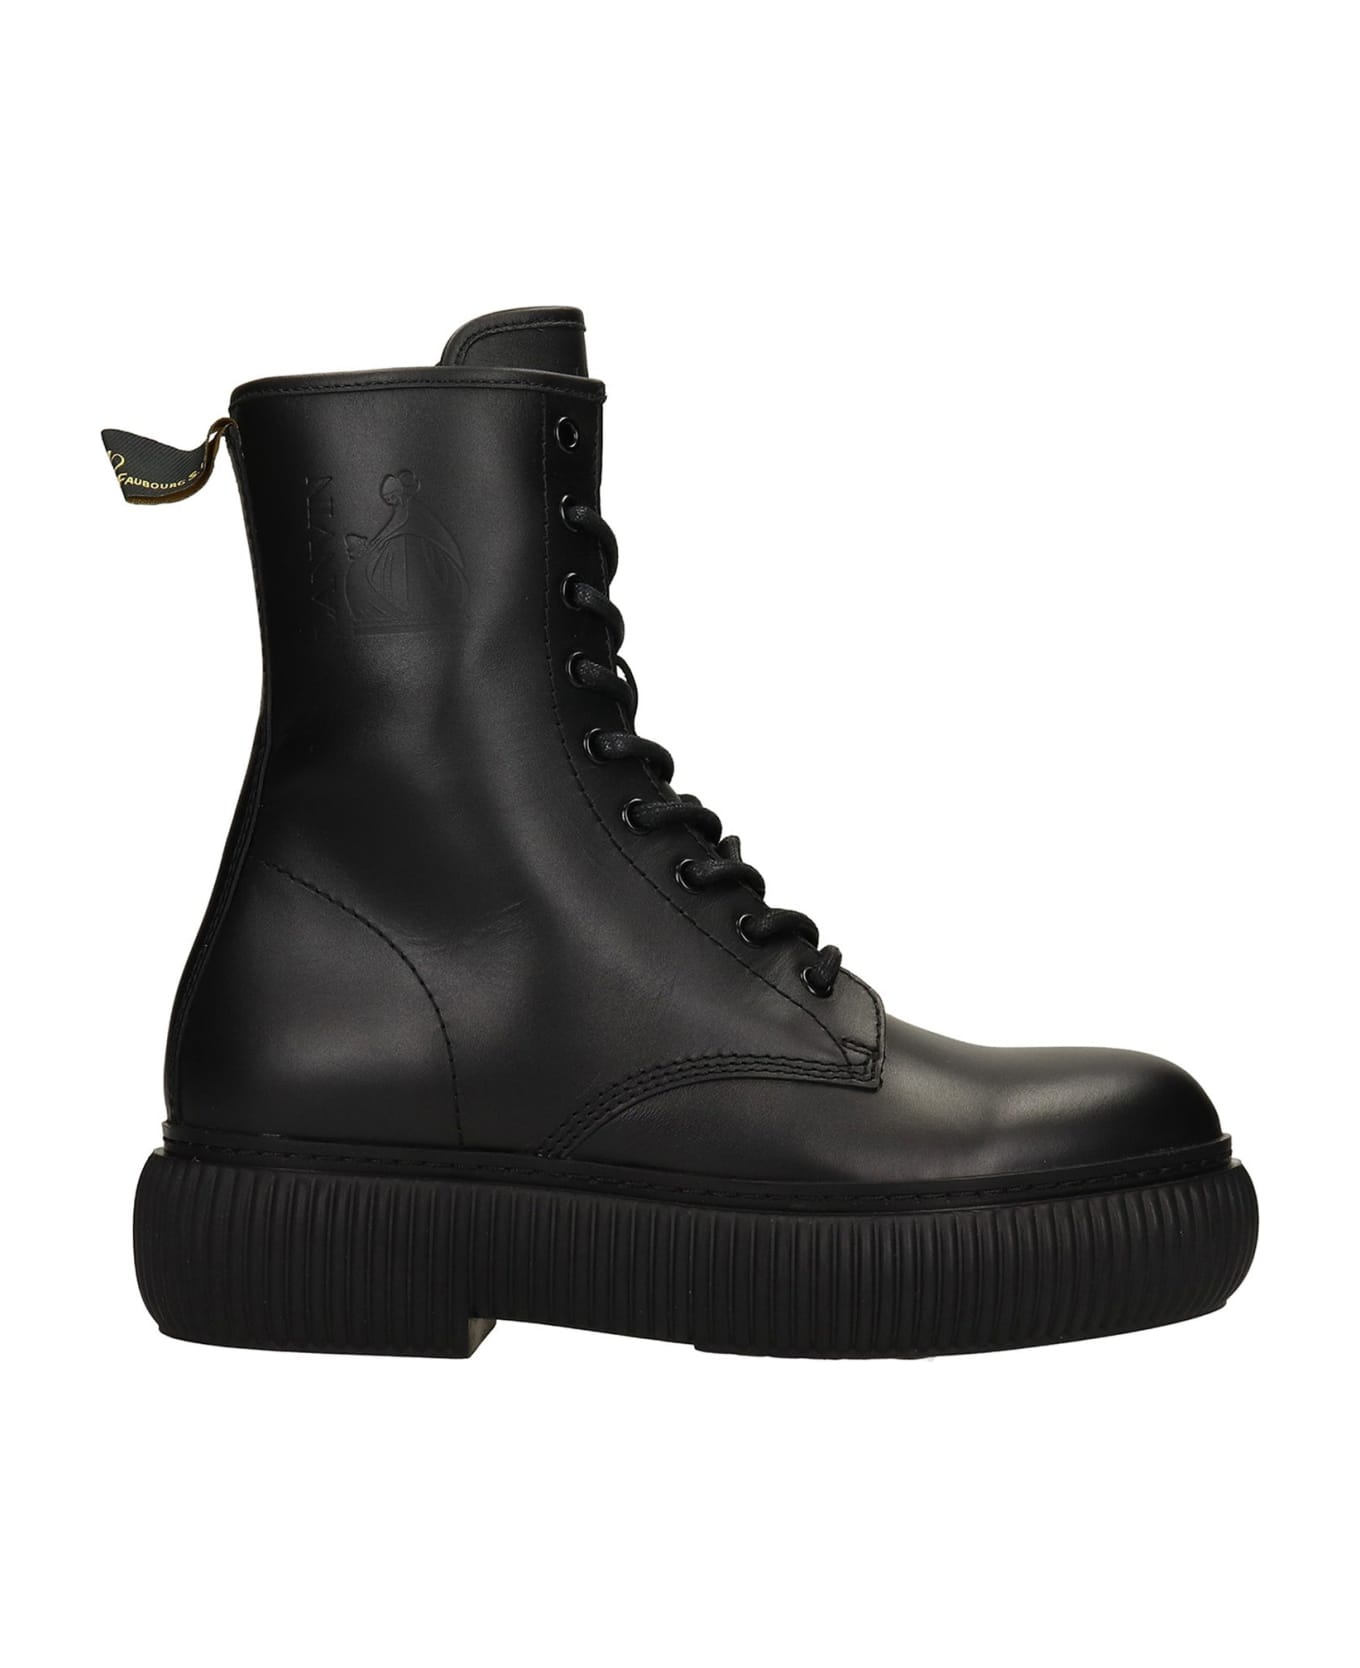 Lanvin Arpege Ankle Boots - Black